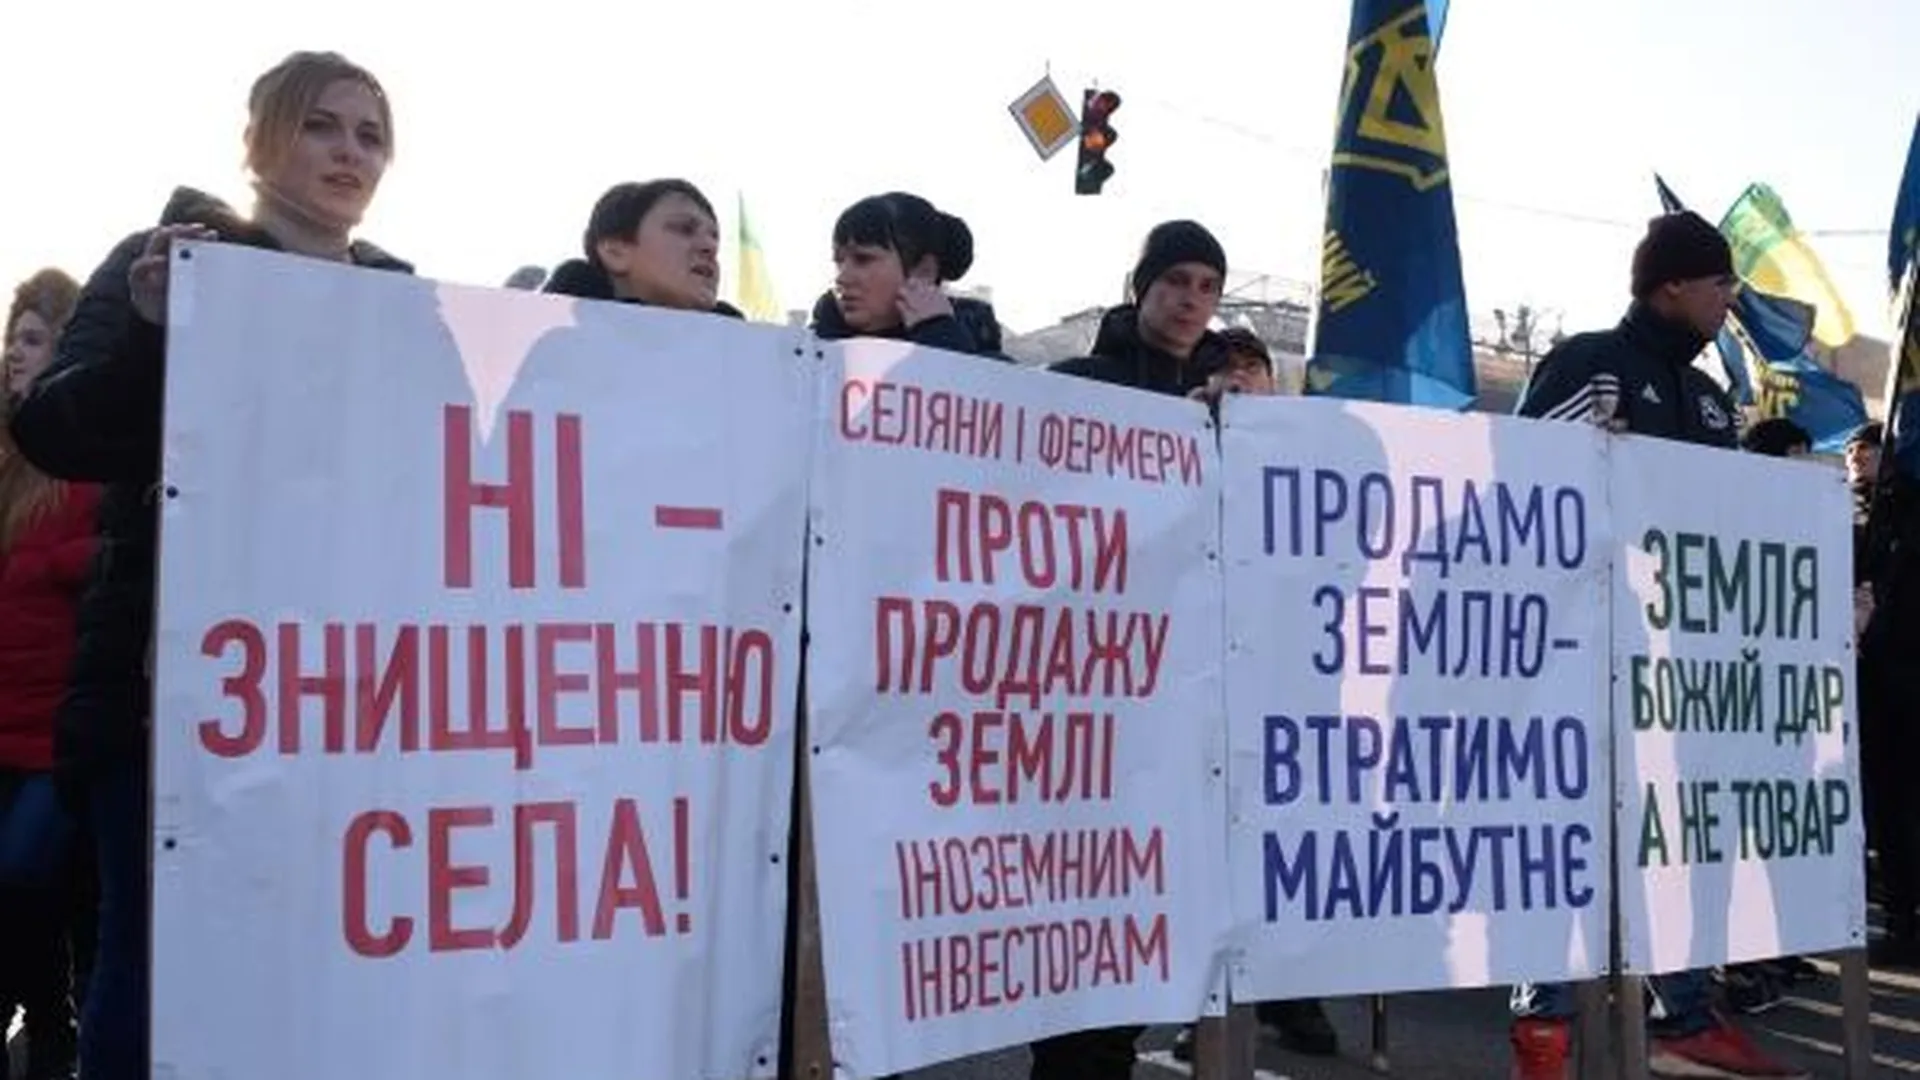 Участники митинга против законопроекта о продаже сельскохозяйственных земель перекрыли дорогу по улице Крещатик в Киеве